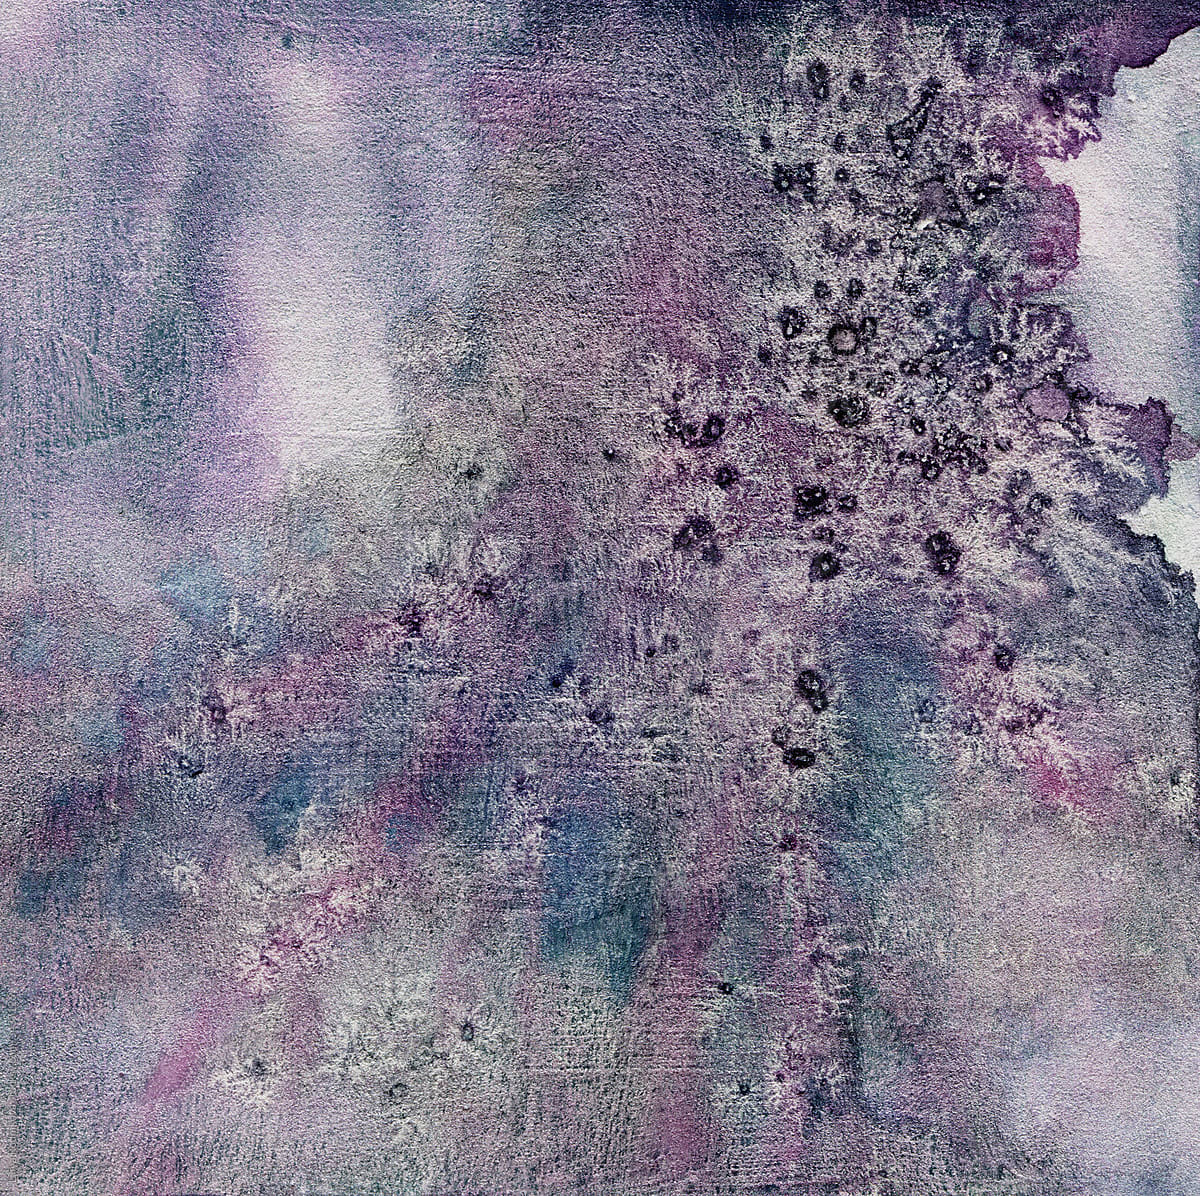 Dark violet salty watercolor artwork